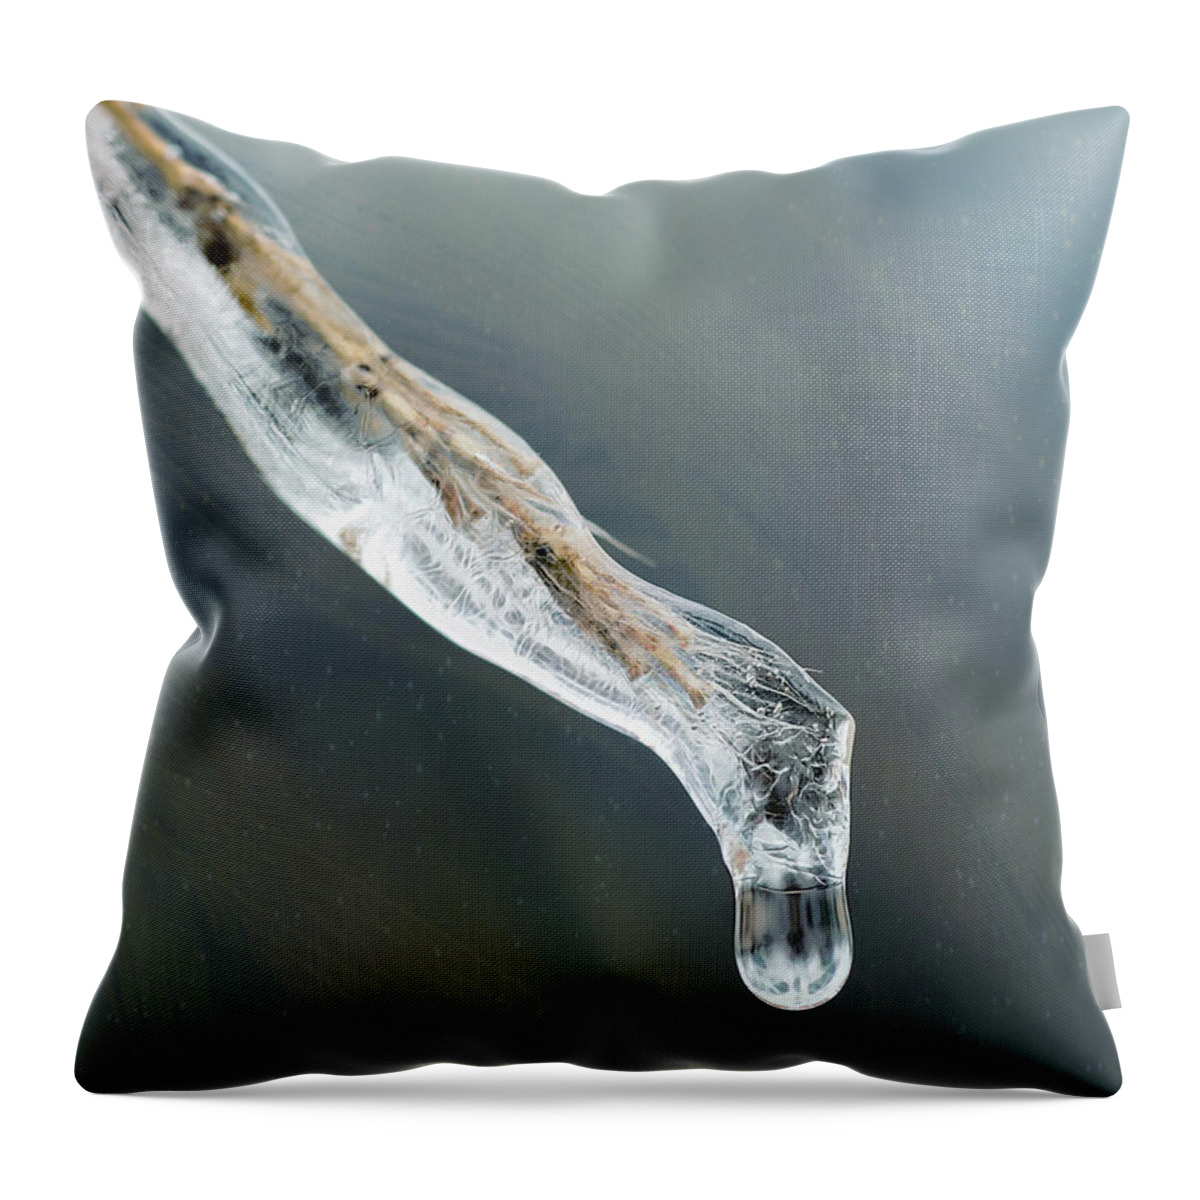 Crystal Throw Pillow featuring the photograph Frozen Pampas Grass Plume by Robert FERD Frank